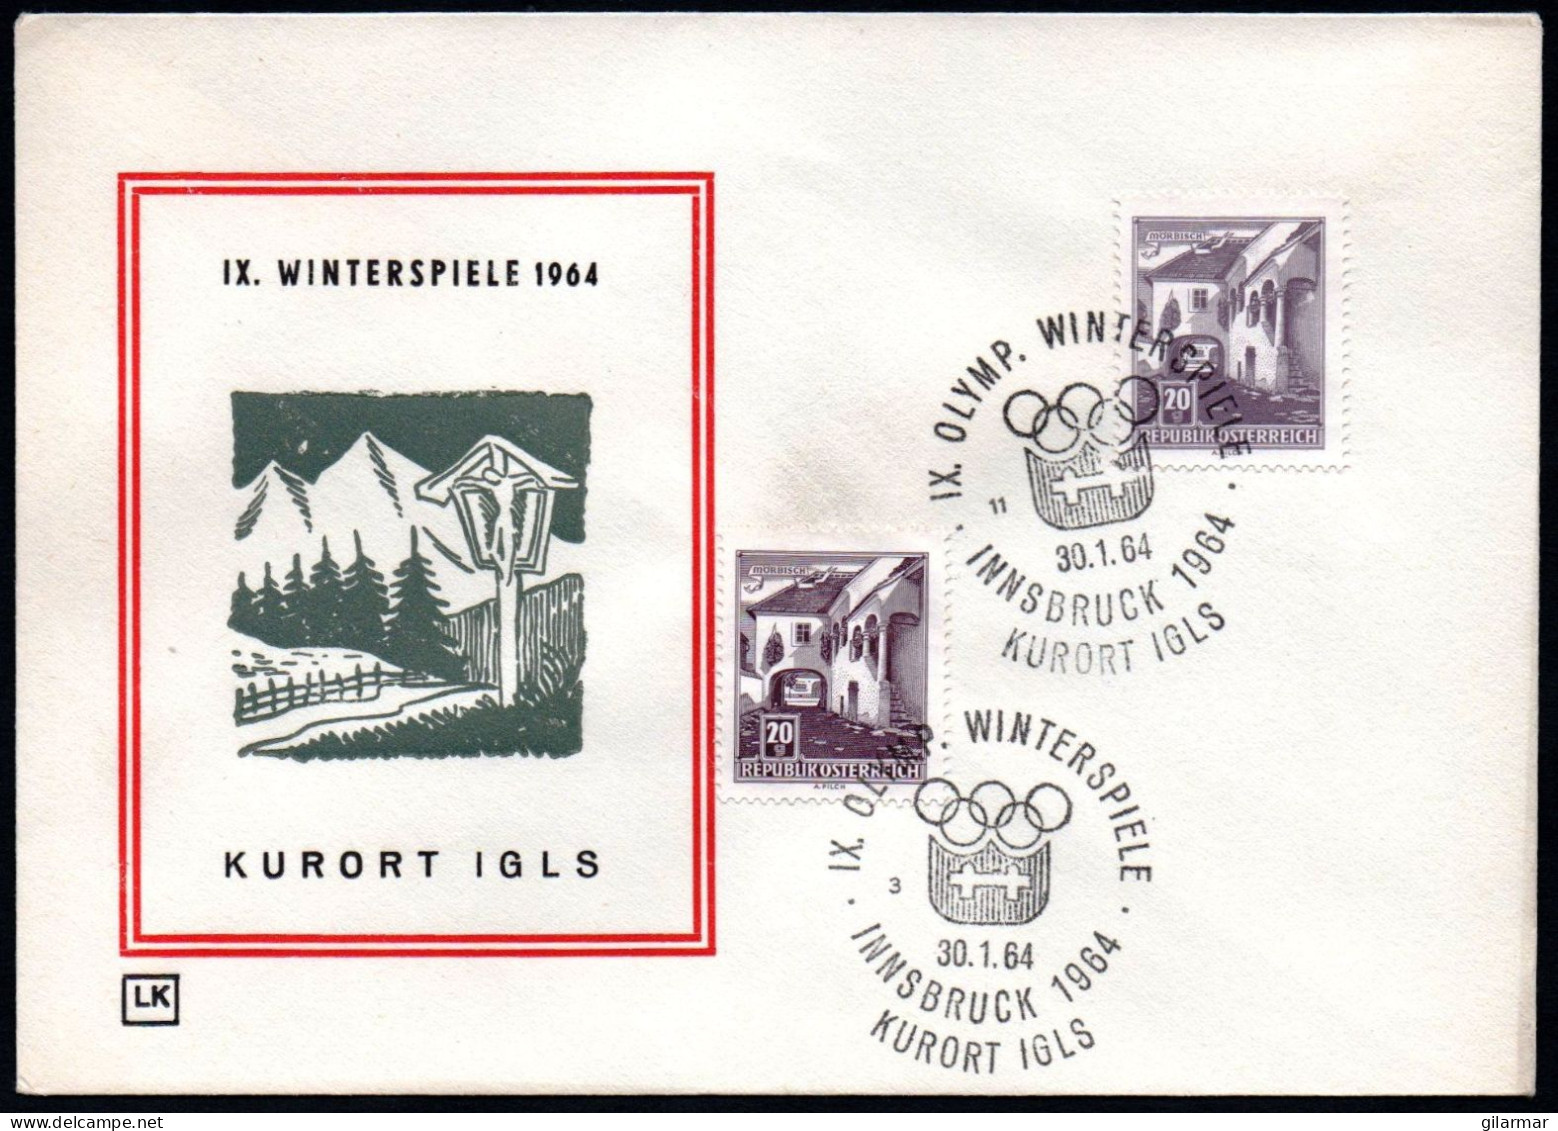 AUSTRIA KURORT IGLS 1964 - IX OLYMPIC WINTER GAMES - INNSBRUCK '64 - CANCELS # 3 & 11 - G - Winter 1964: Innsbruck